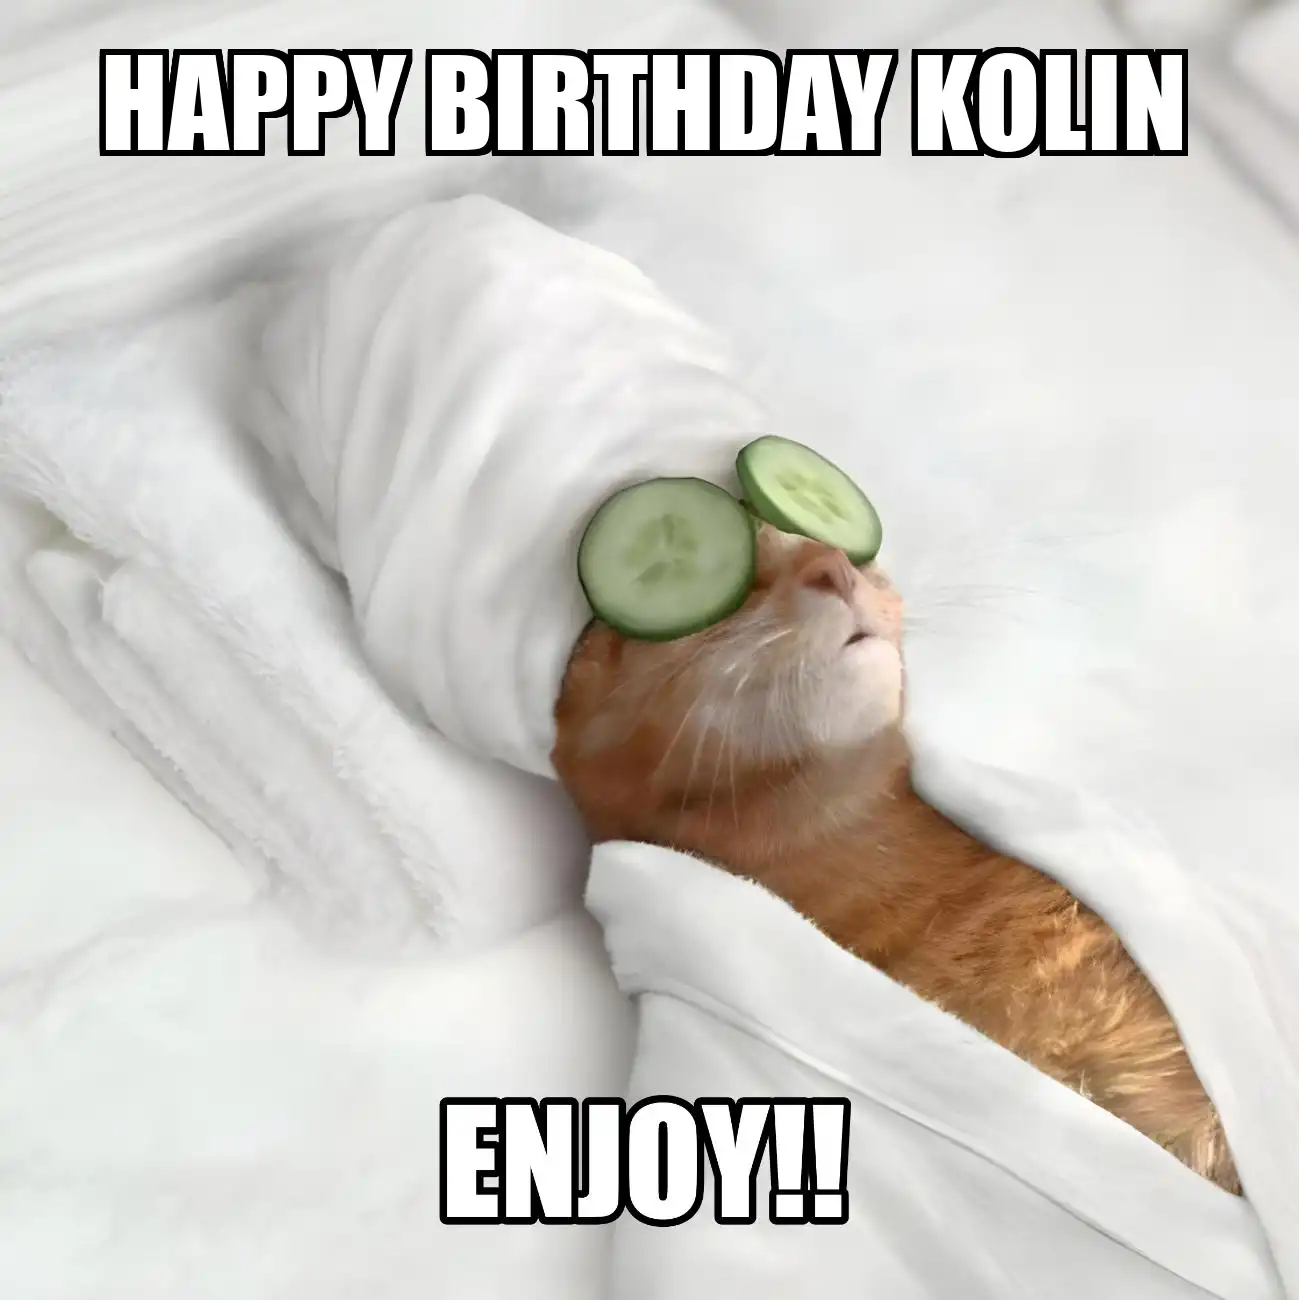 Happy Birthday Kolin Enjoy Cat Meme